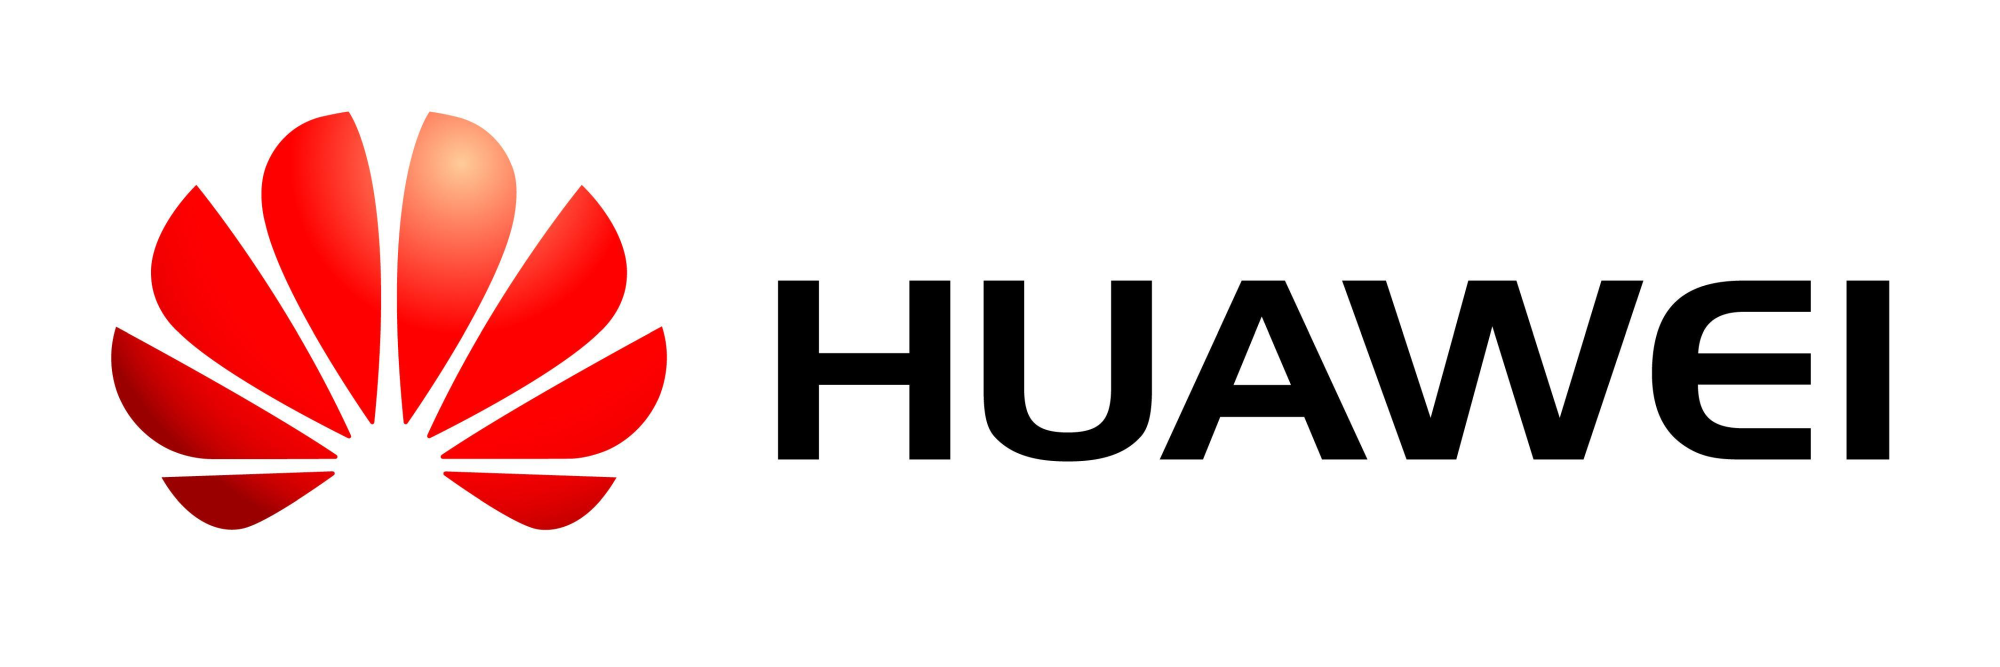 Huawei desarrolla EMUI 9.0 para el mercado indio